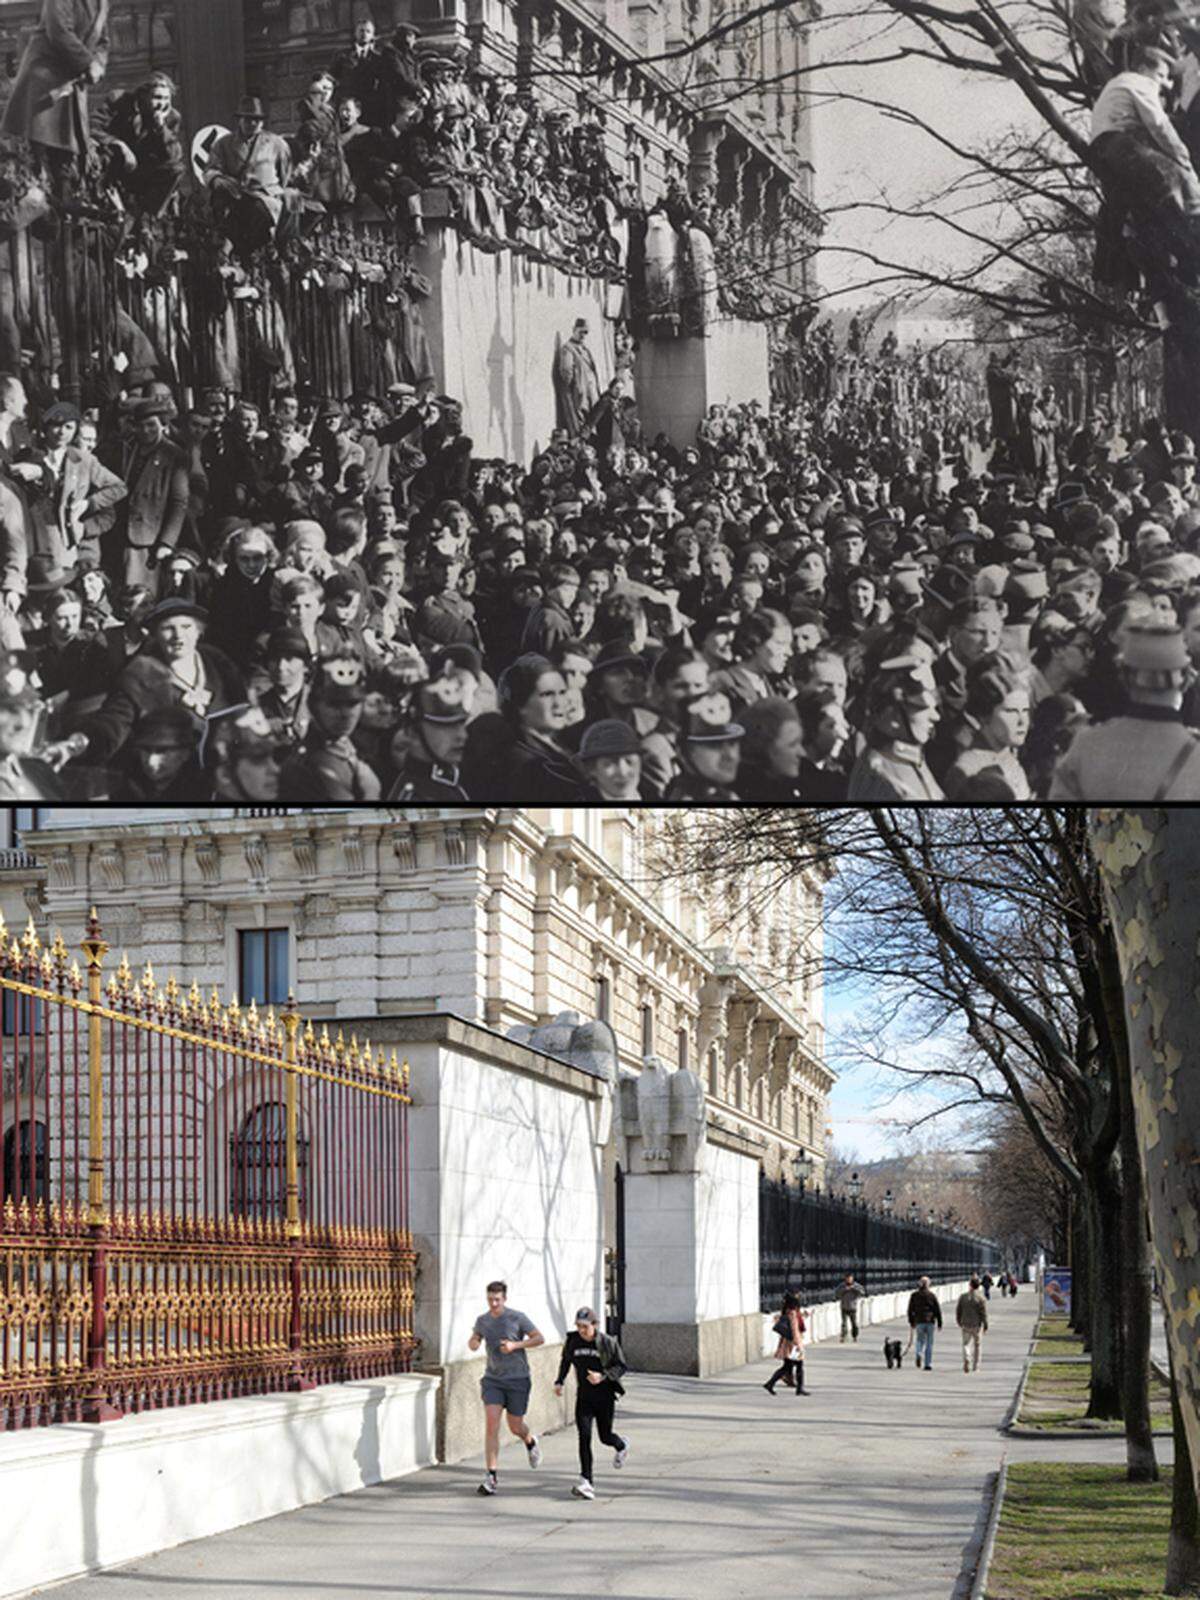 Drei Tage nach dem Anschluss 1938: Auf dem Burgring - vor der Neuen Burg - hat sich eine Menschenmenge versammelt, einige zeigen den Hitlergruß. Bild unten: Der Schauplatz heute.